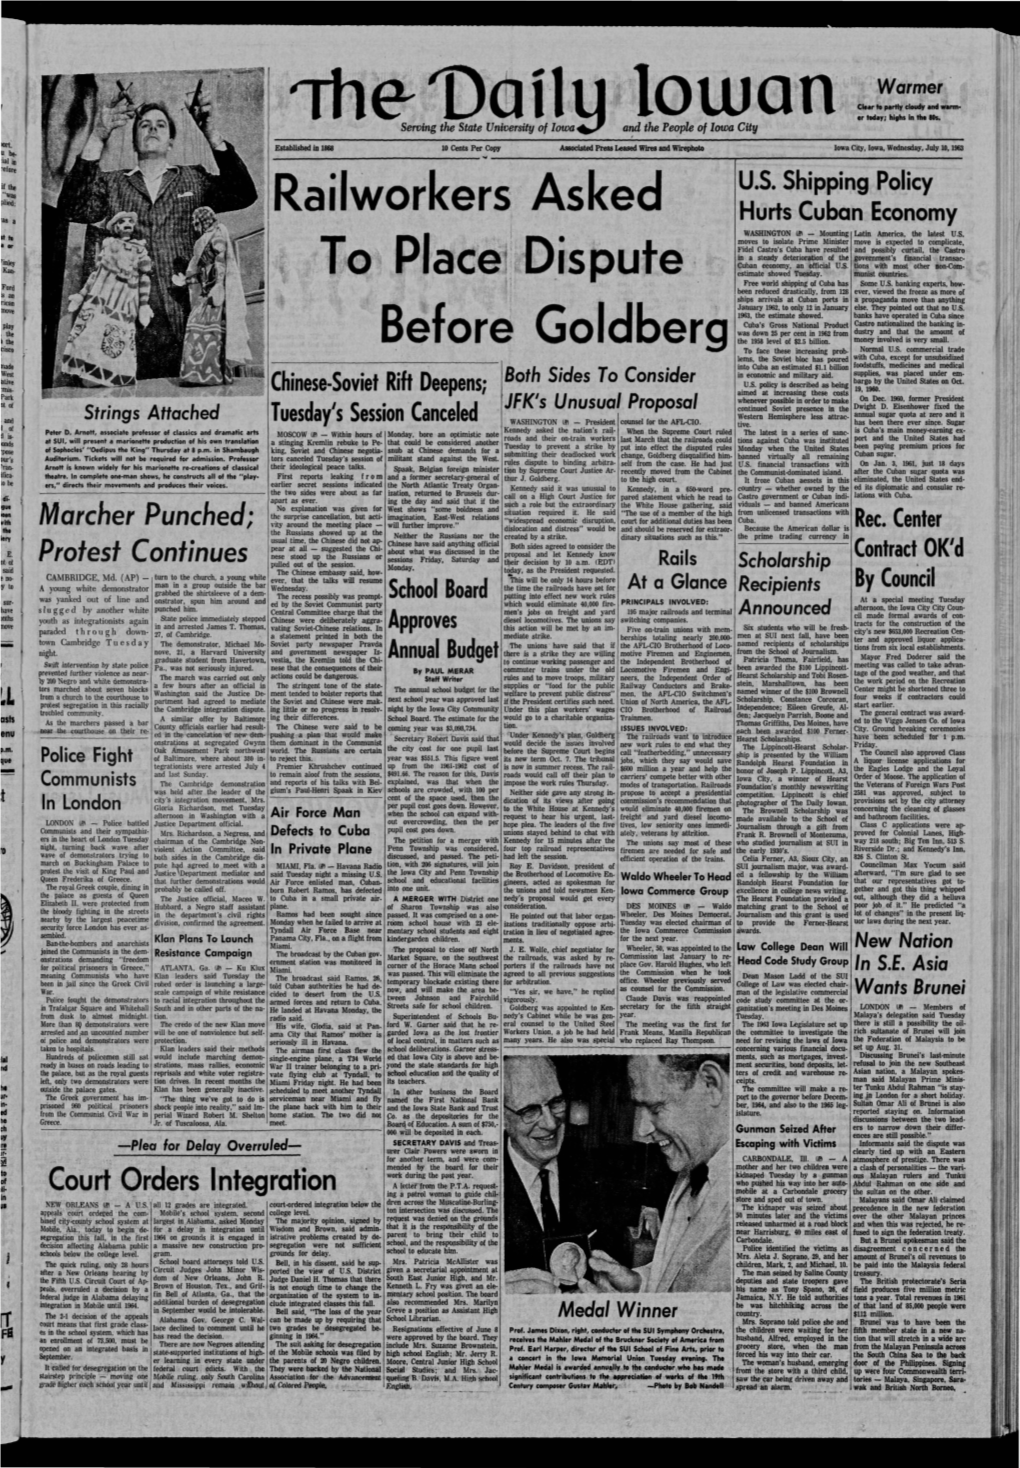 Daily Iowan (Iowa City, Iowa), 1963-07-10